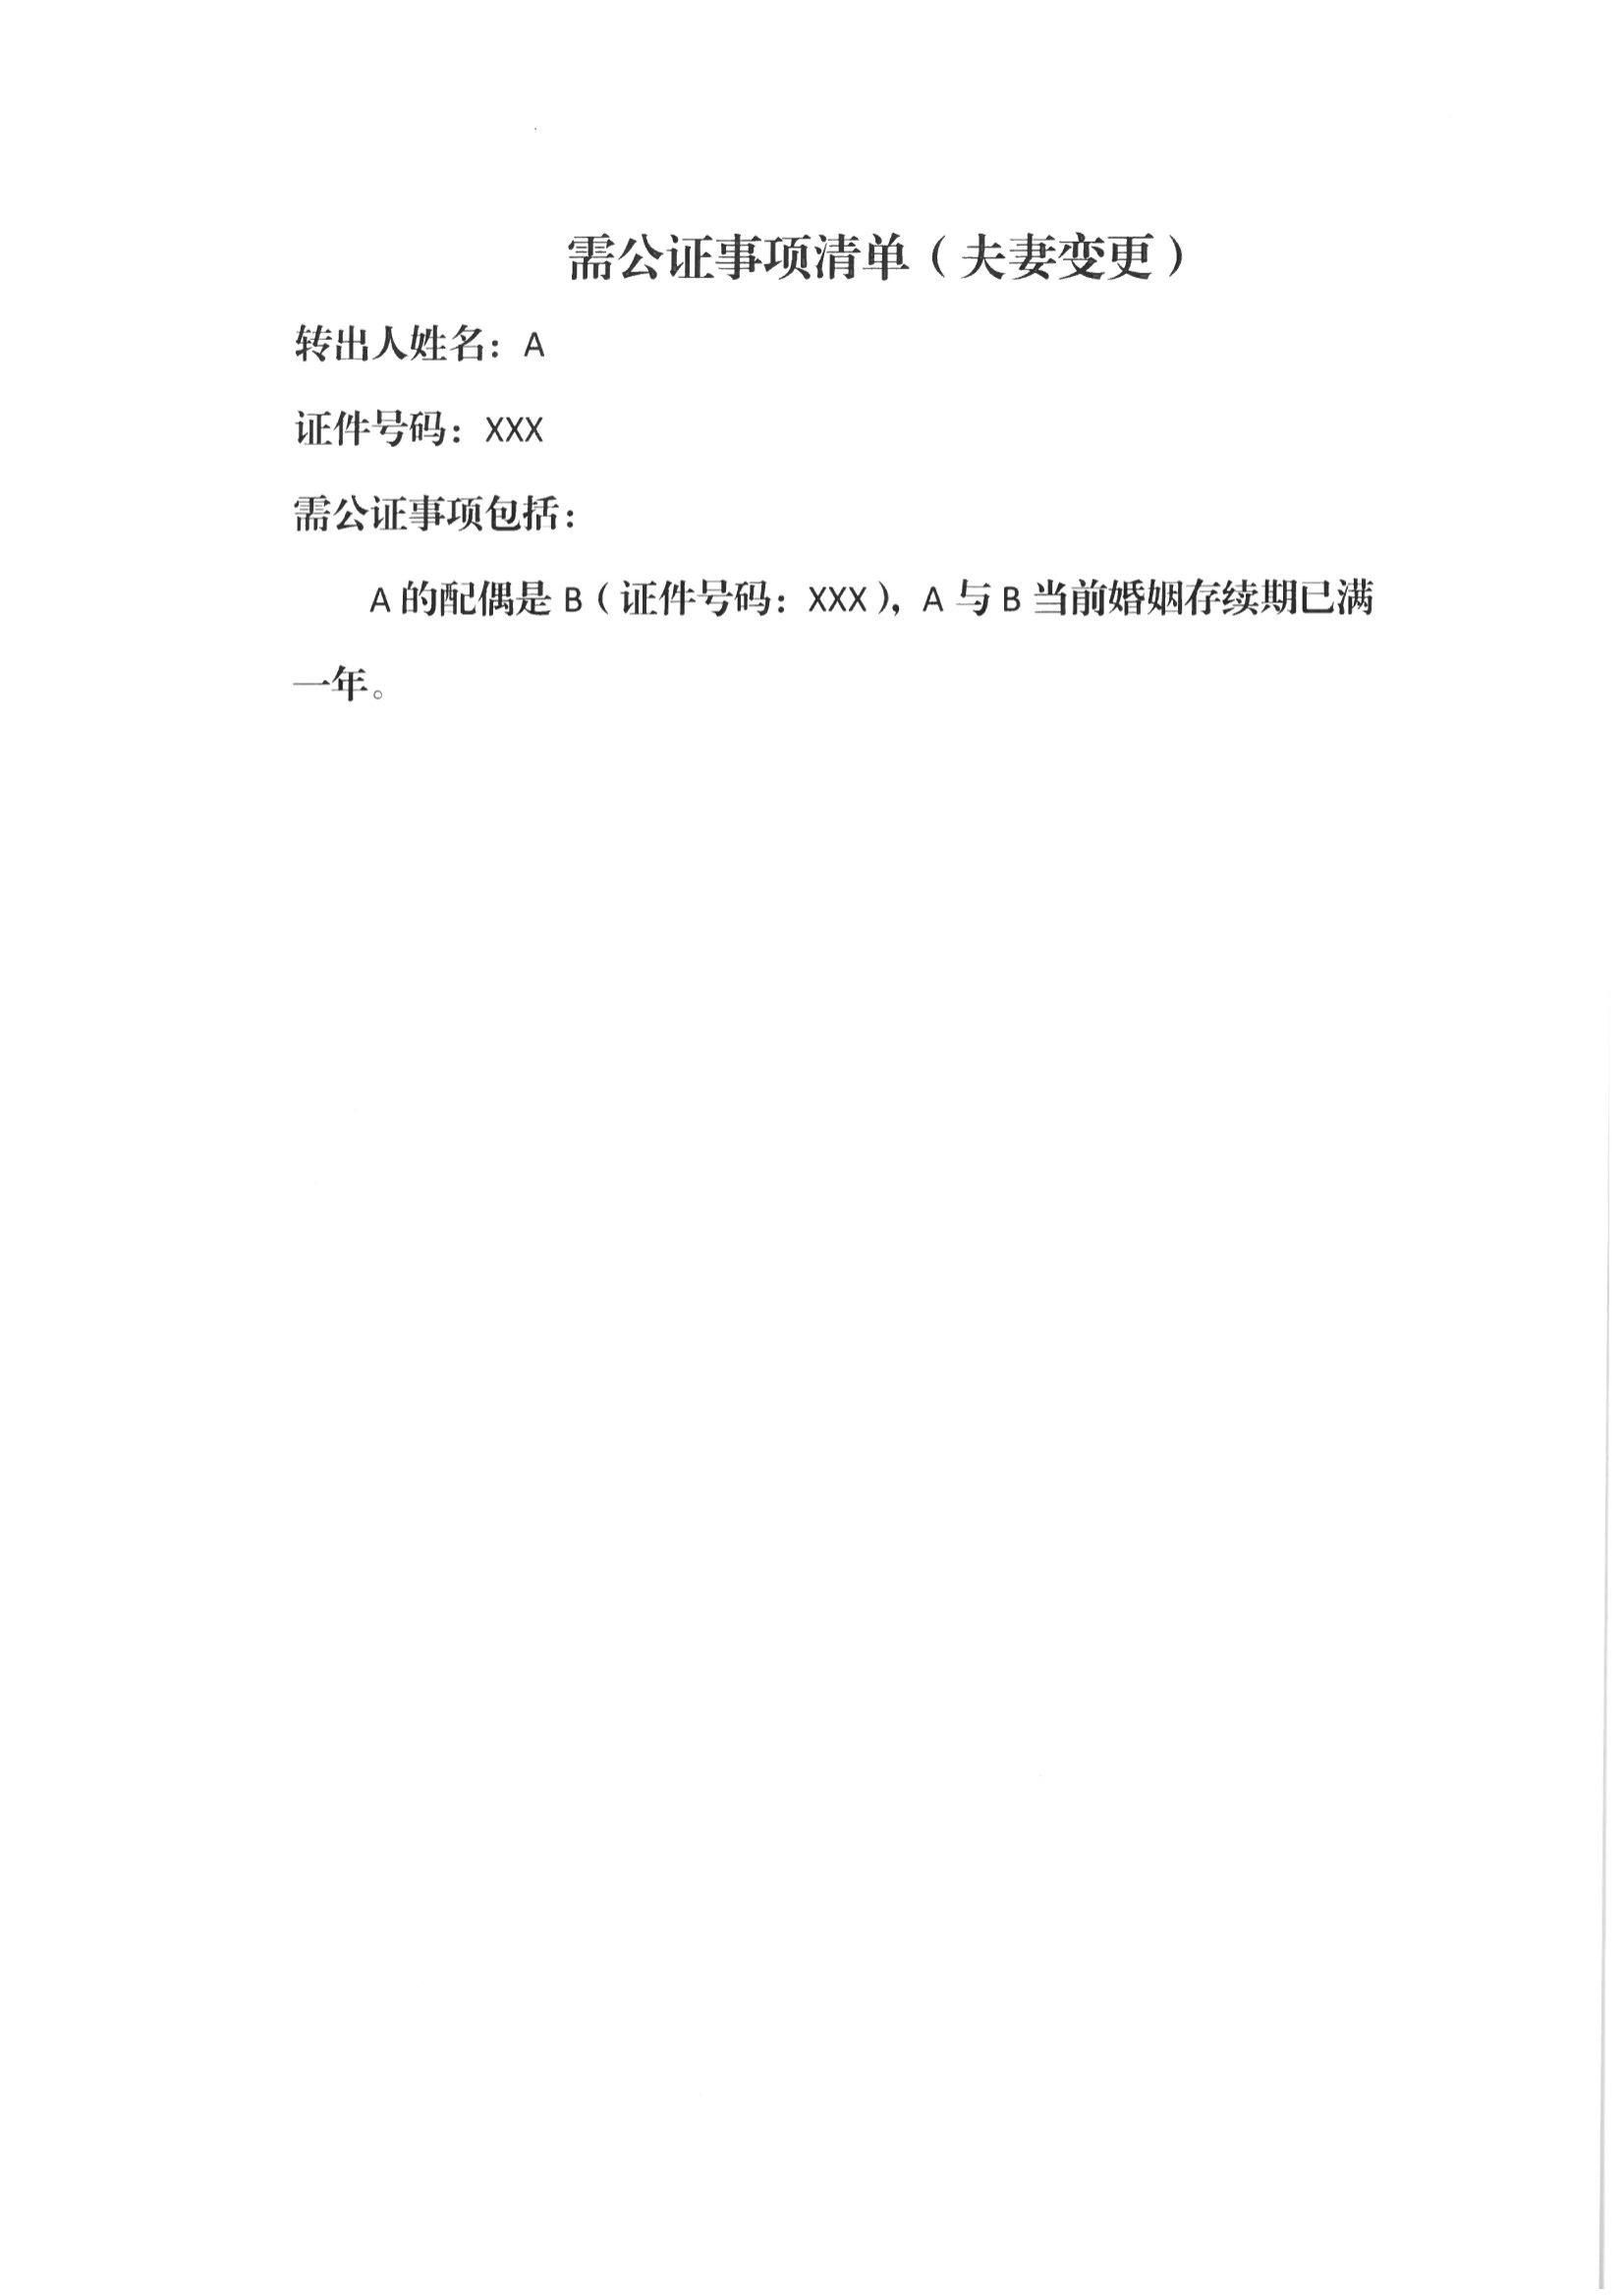 13、北京市公证协会关于印发《北京市公证协会规范执业指引》第13号的通知_50